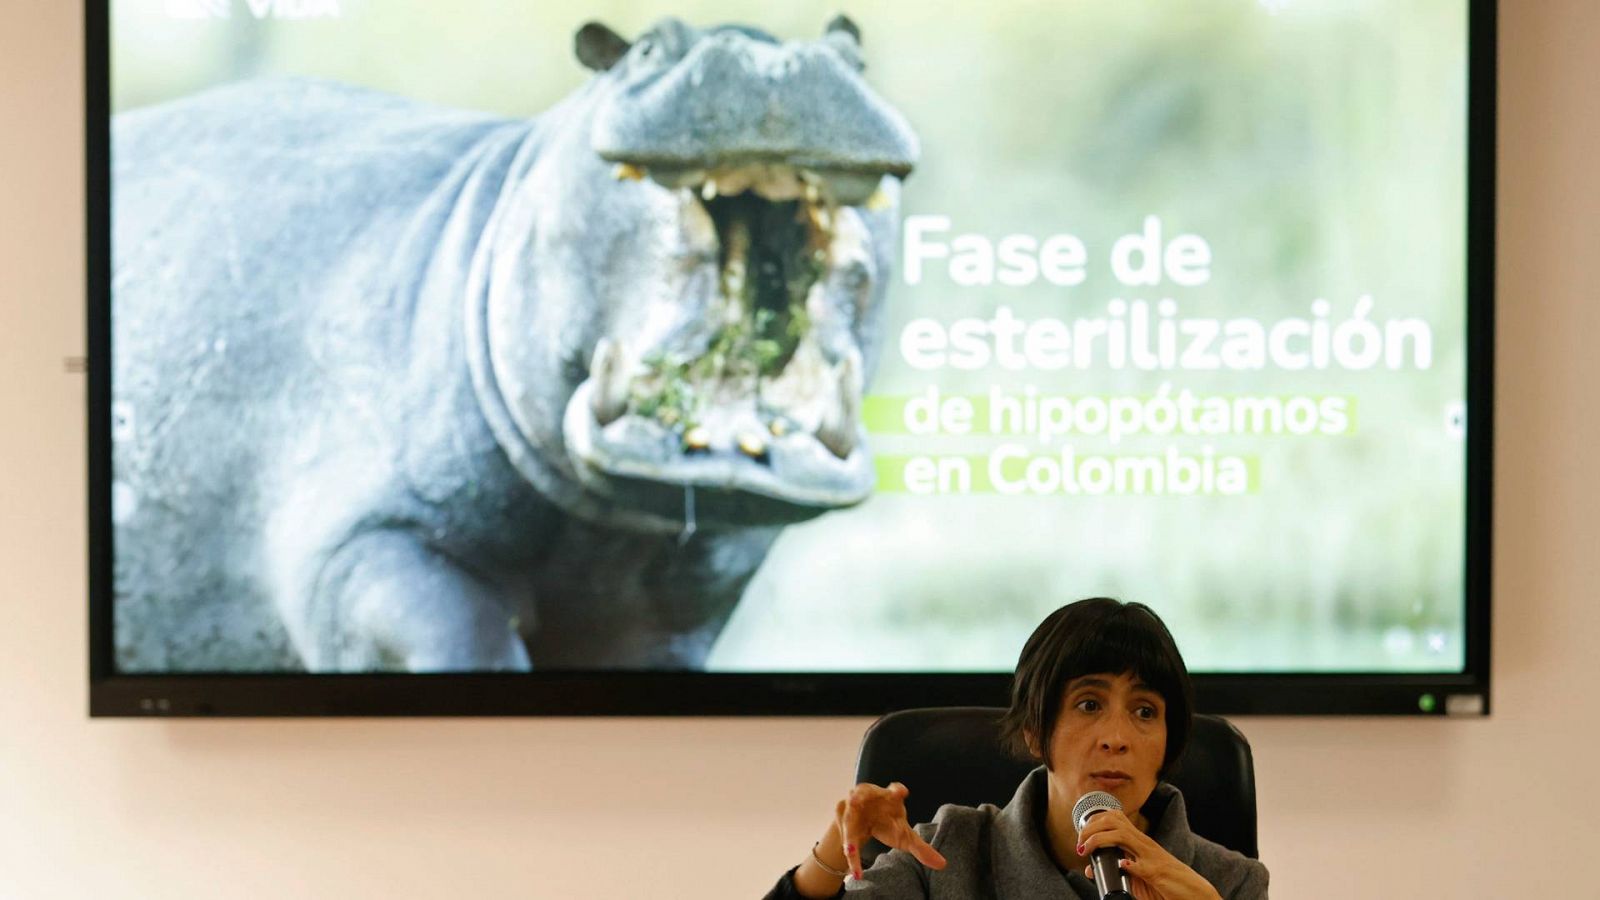 La ministra colombiana de Ambiente y Desarrollo Sostenible, Susana Muhamad, durante una rueda de prensa sobre la Fase de esterilización de hipopótamos en Colombia.